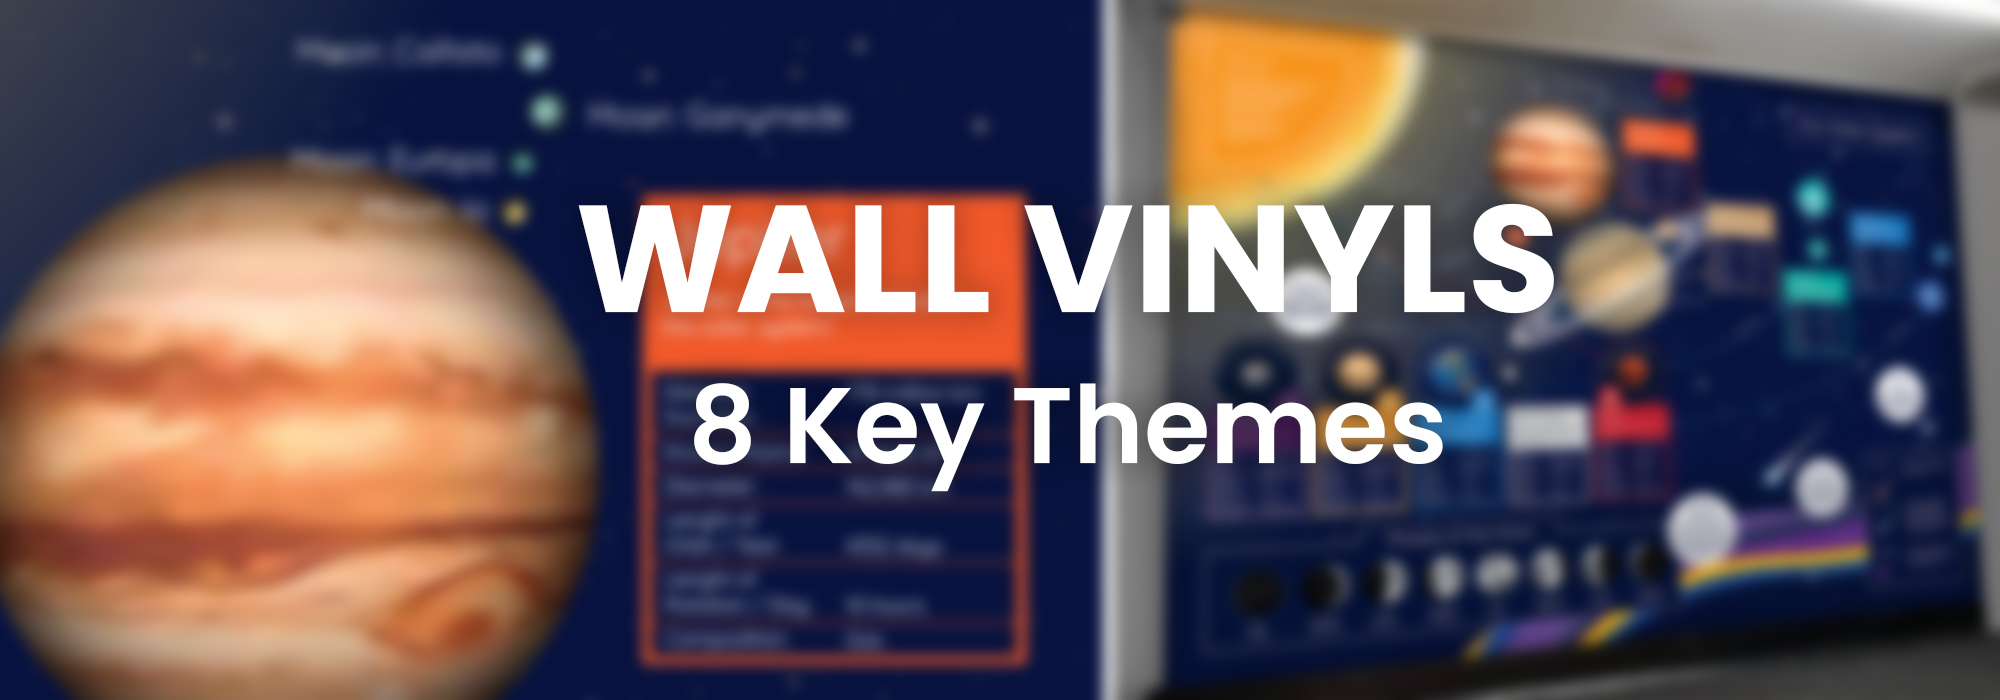 Wall vinyls 8 key themes